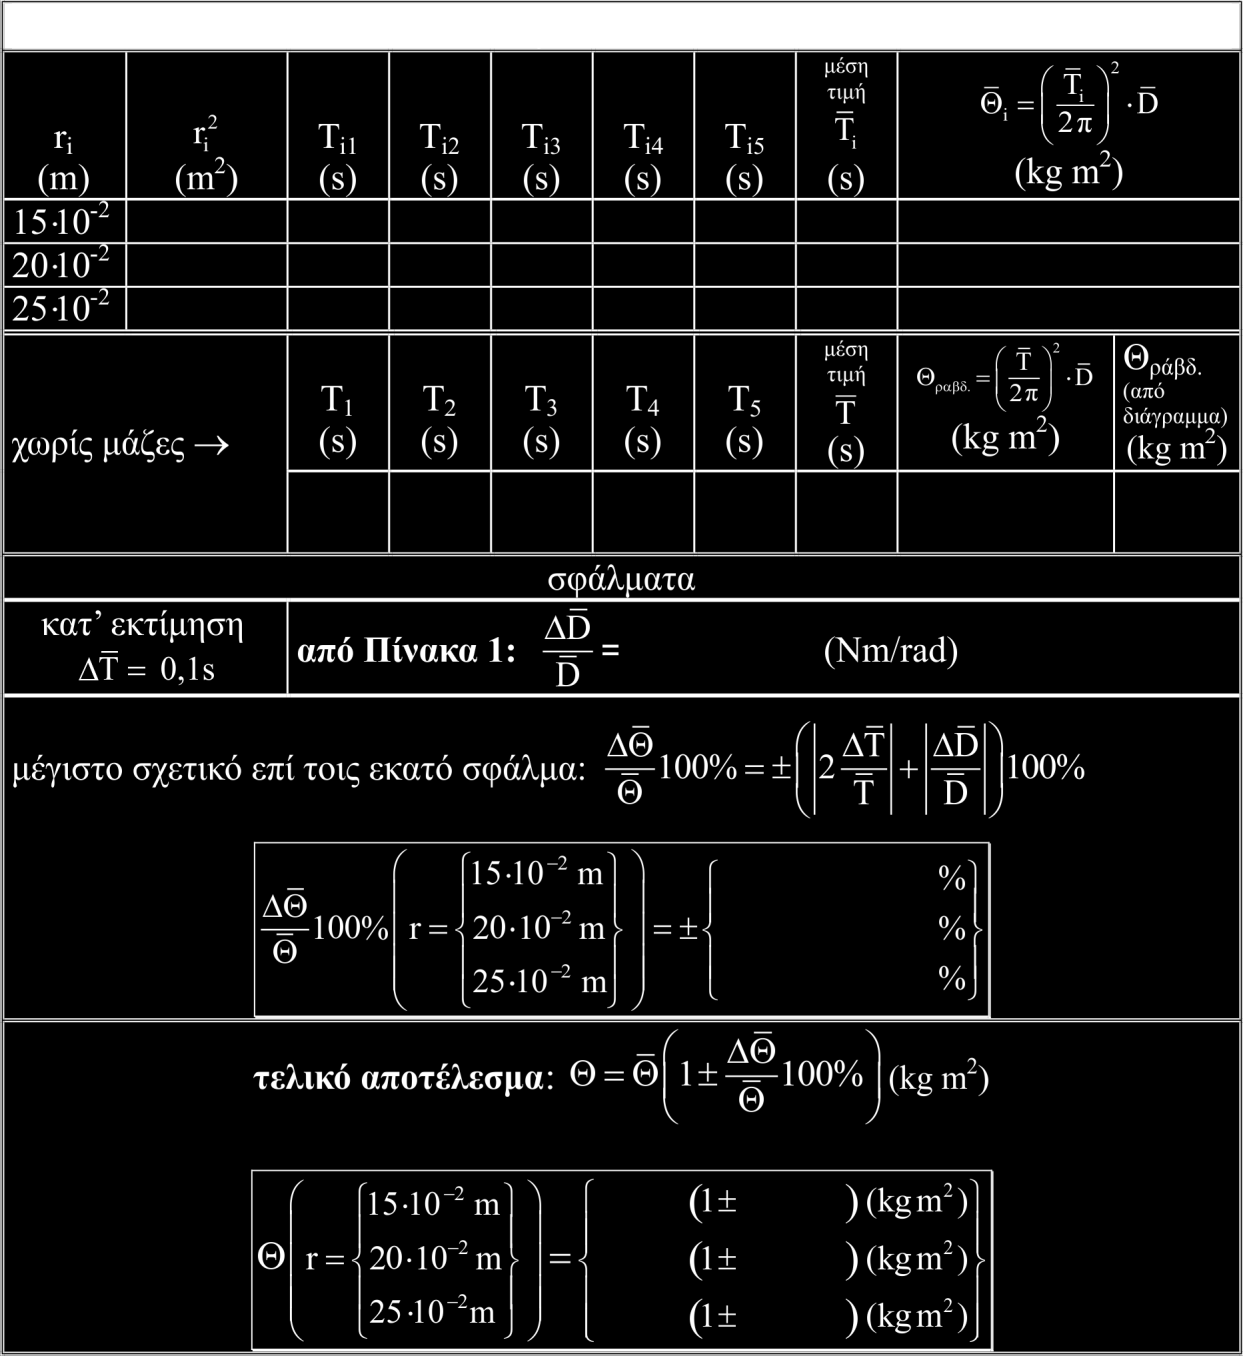 Θ (ράβδος+μάζες) = Θ ράβδος + Θ μάζες {1} Η Θ ράβδος είναι ανεξάρτητη της απόστασης. Η Θ μάζες περιμένουμε (σύμφωνα με την (9.17)) να είναι ανάλογη προς το r 2 (Οι μάζες θεωρούνται σαν υλικά σημεία).